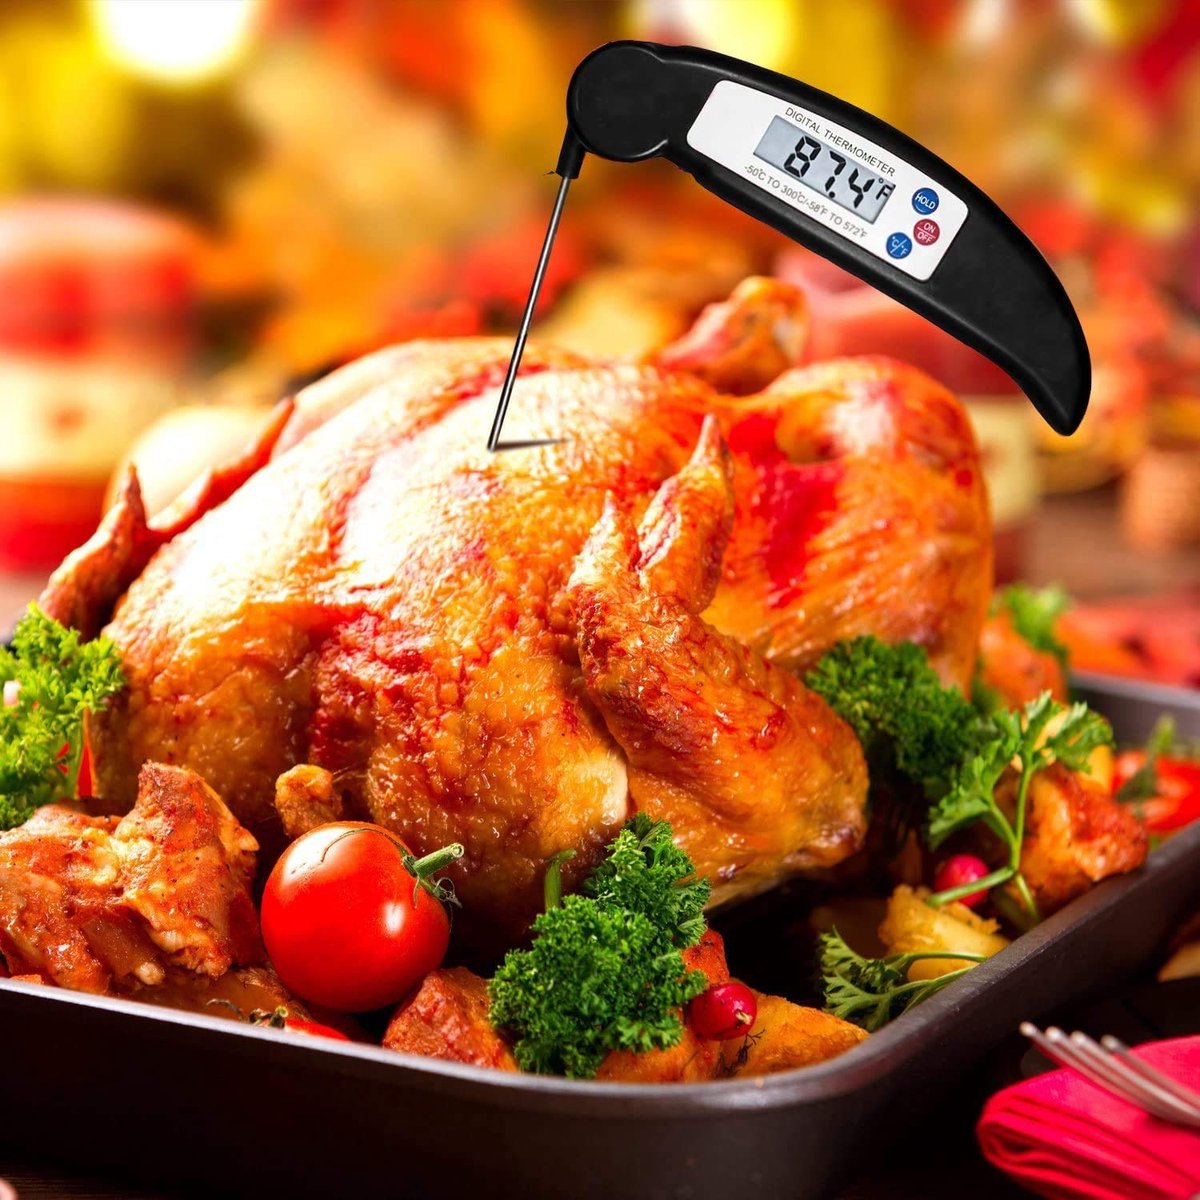 Thermometre cuisine, Thermomètre Cuisson pour LCD et lecture instantanée,  convient pour griller/cuisiner/friture(batterie incluse)